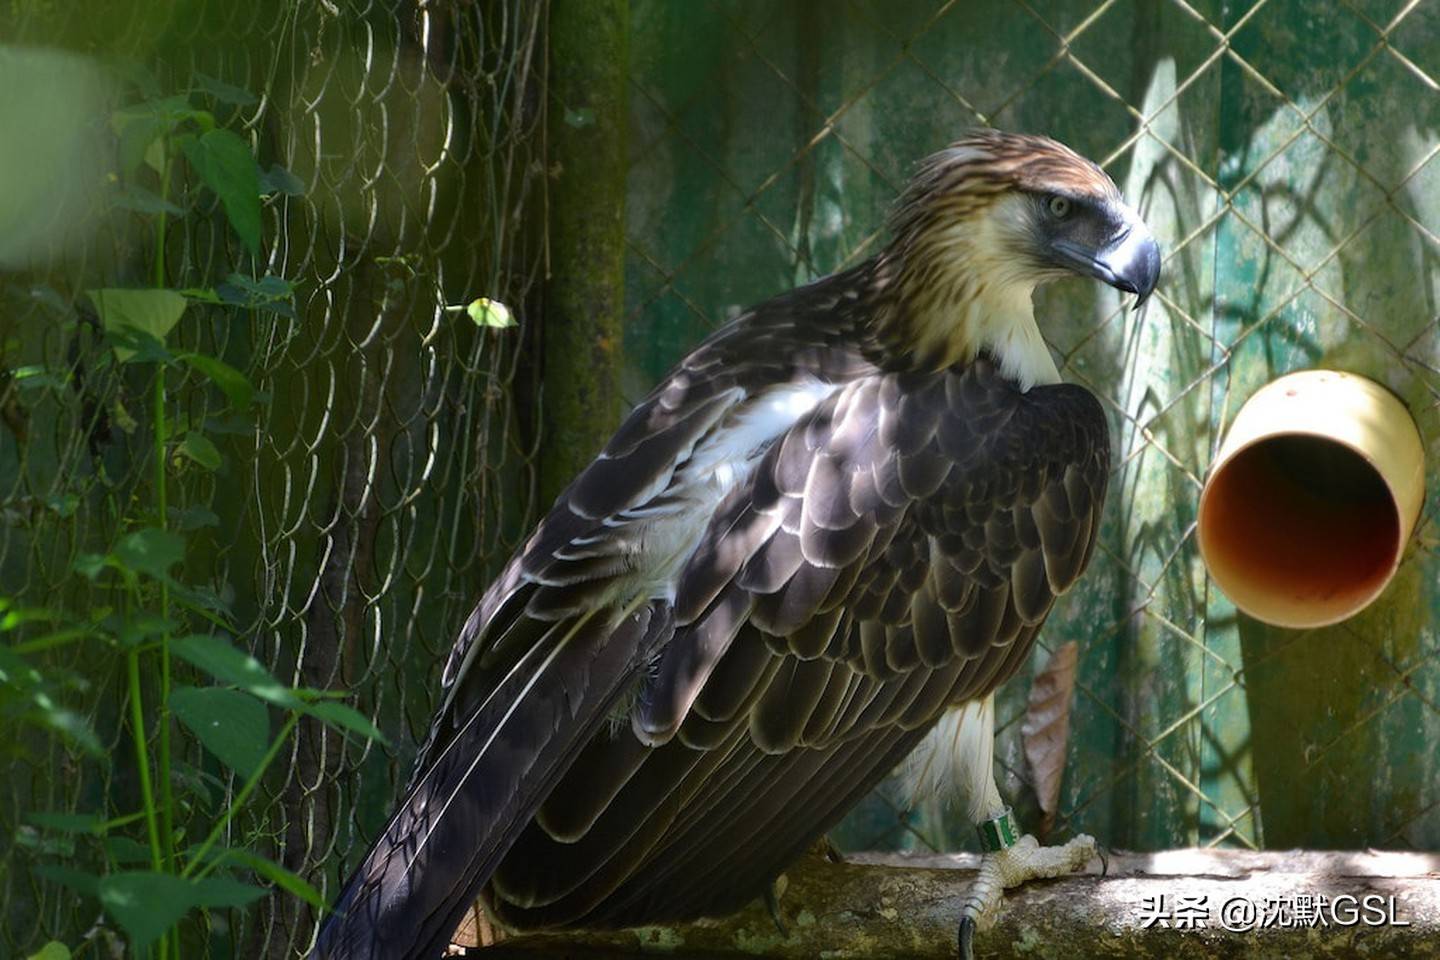 原创食猿雕菲律宾国鸟的8个奇特事实